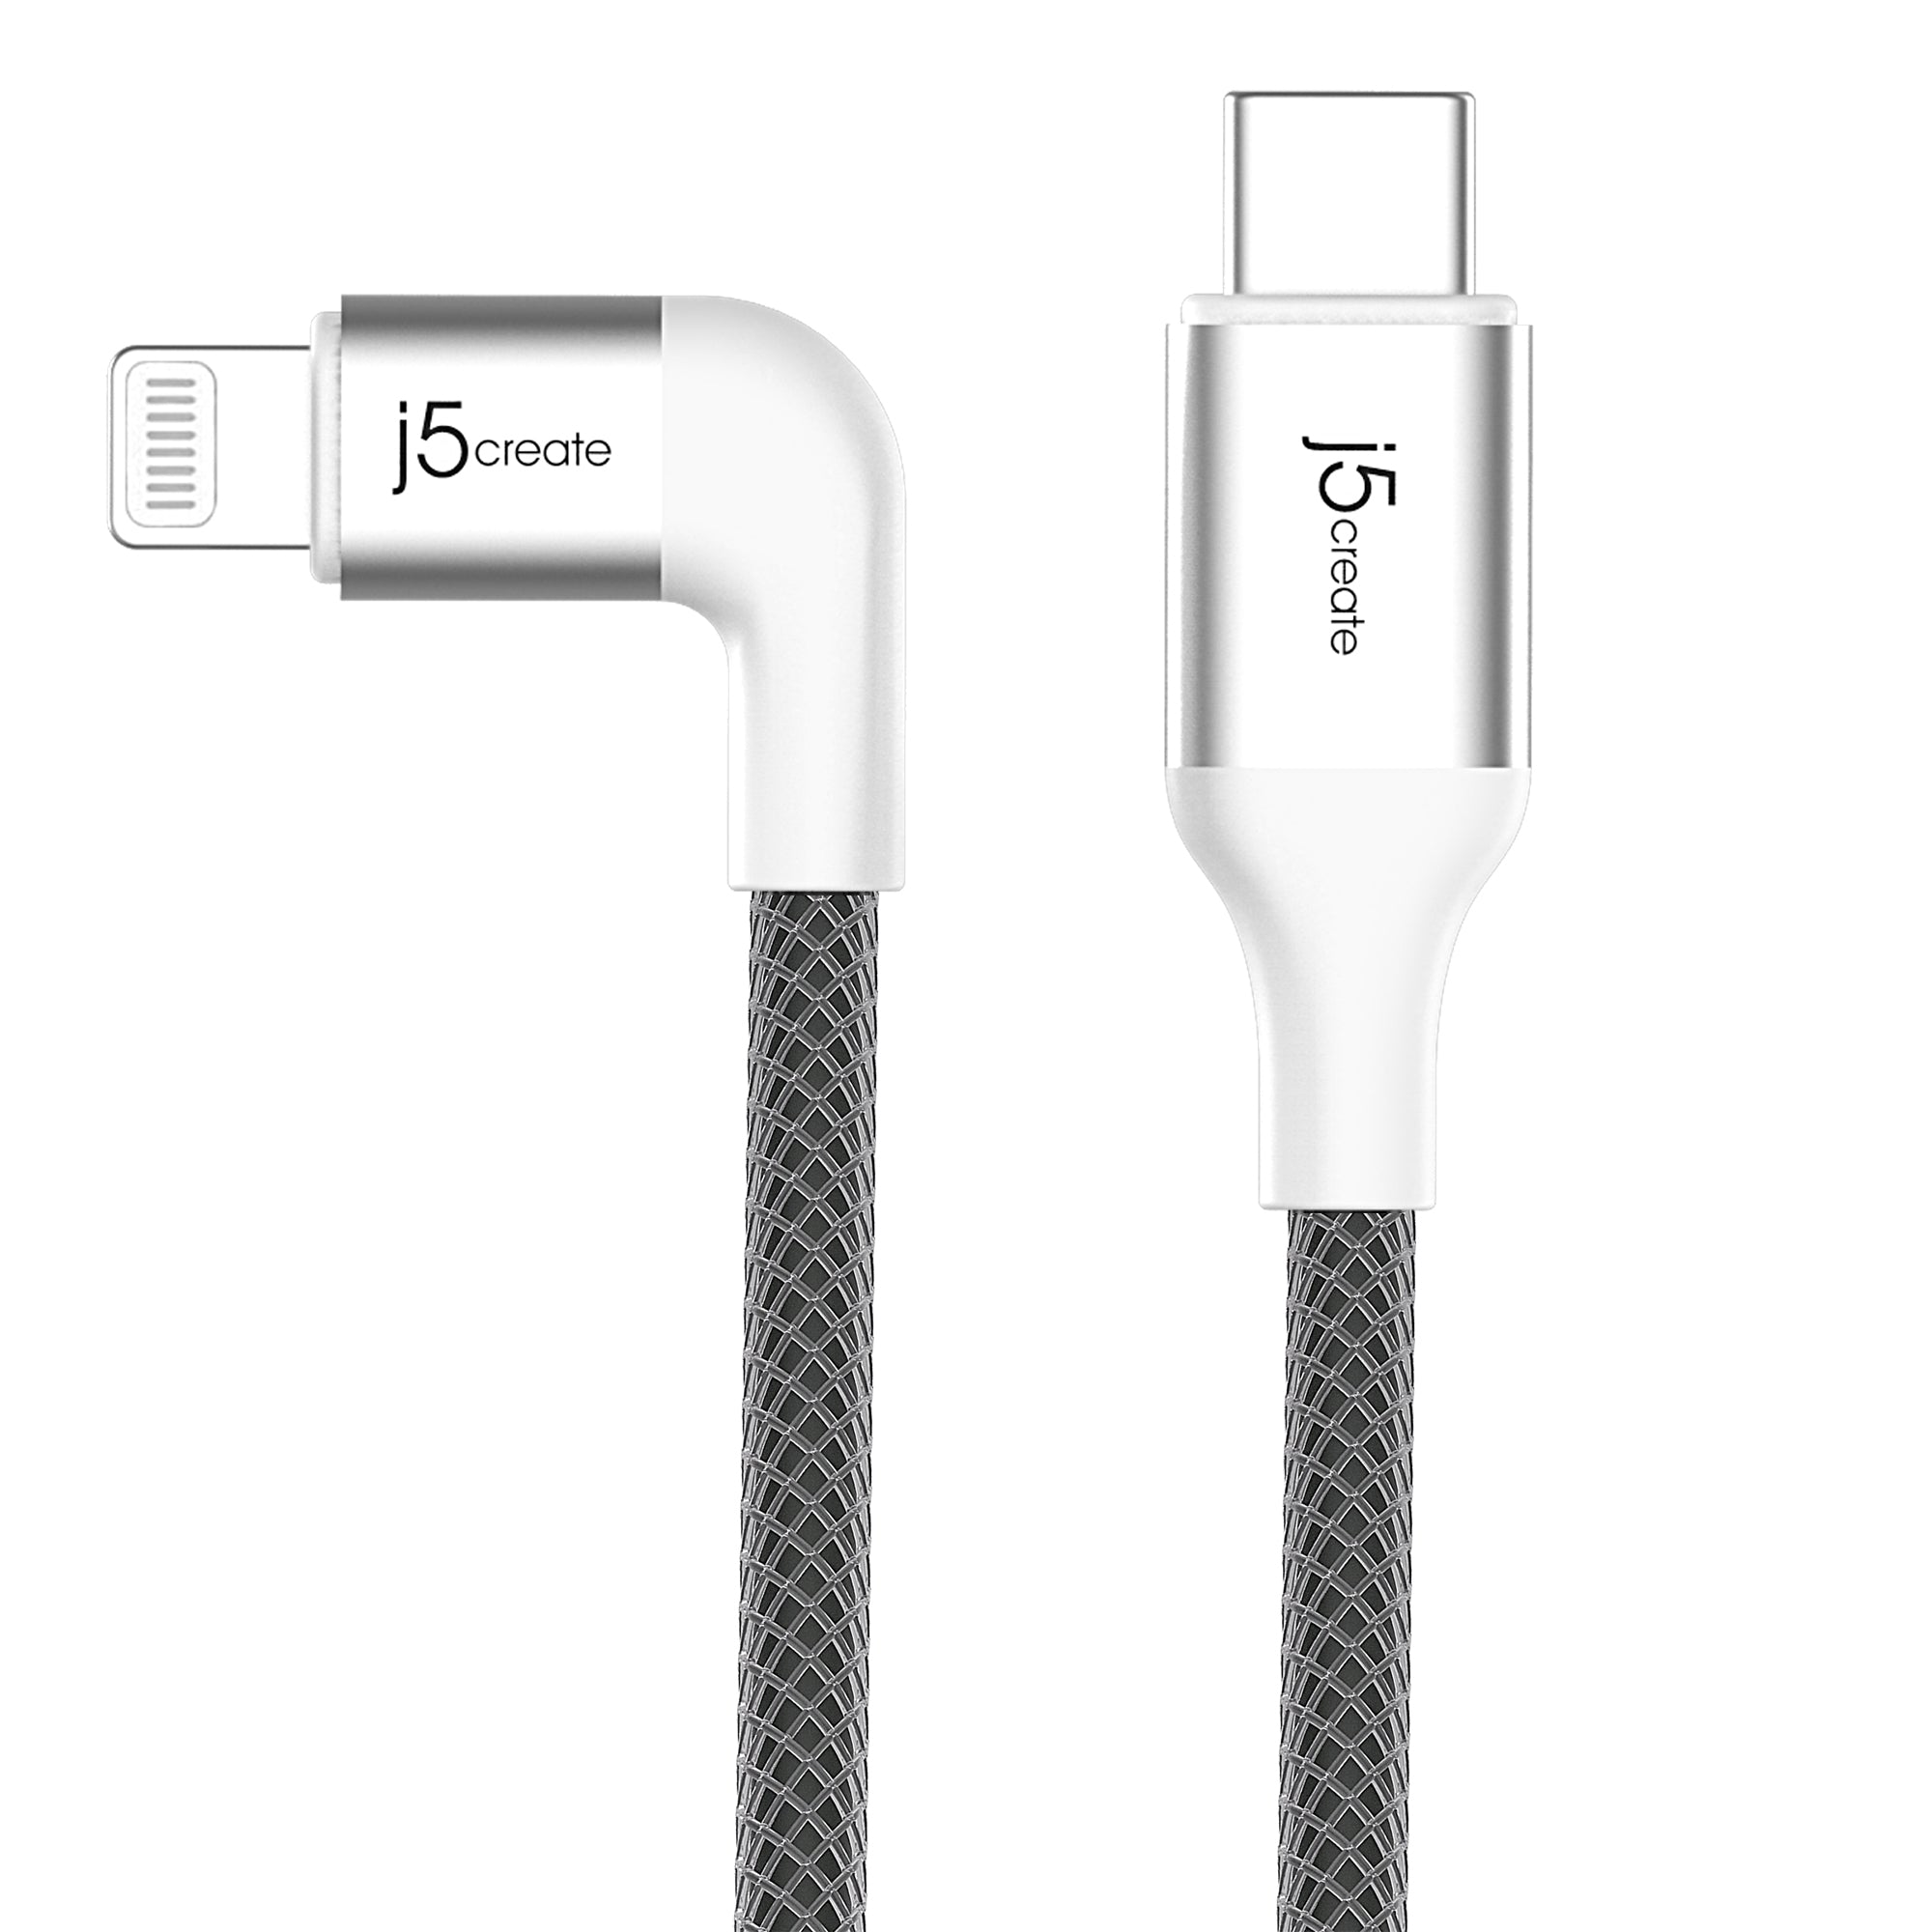 Jaym Câble ultra renforcé Power Delivery USB-C vers Lightning - 2,5 m